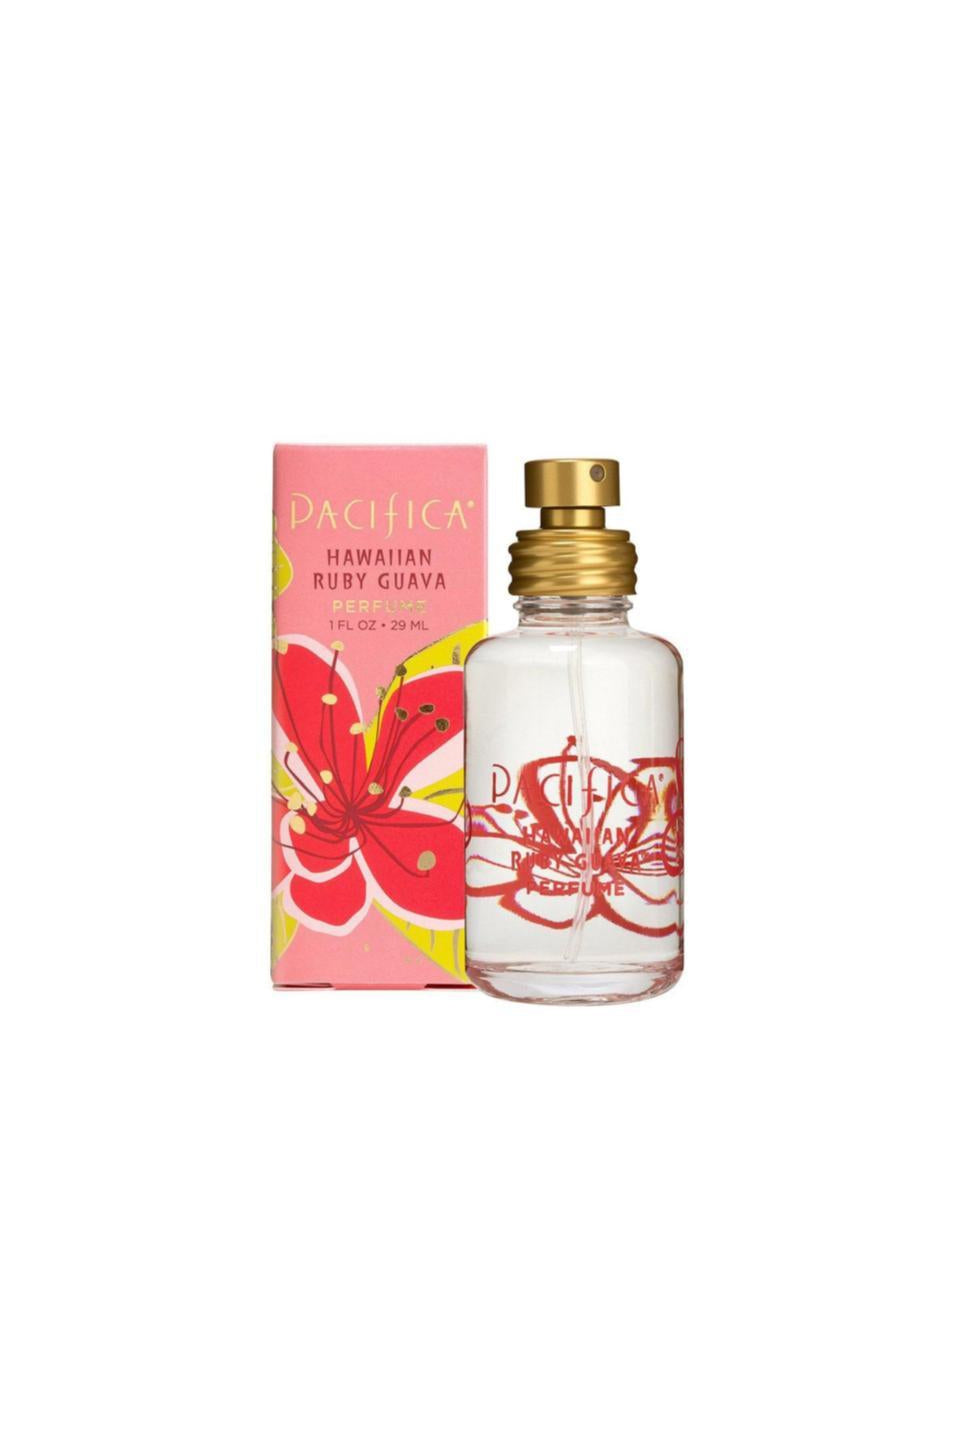 Pacifica Hawaiian Perfume 29ml